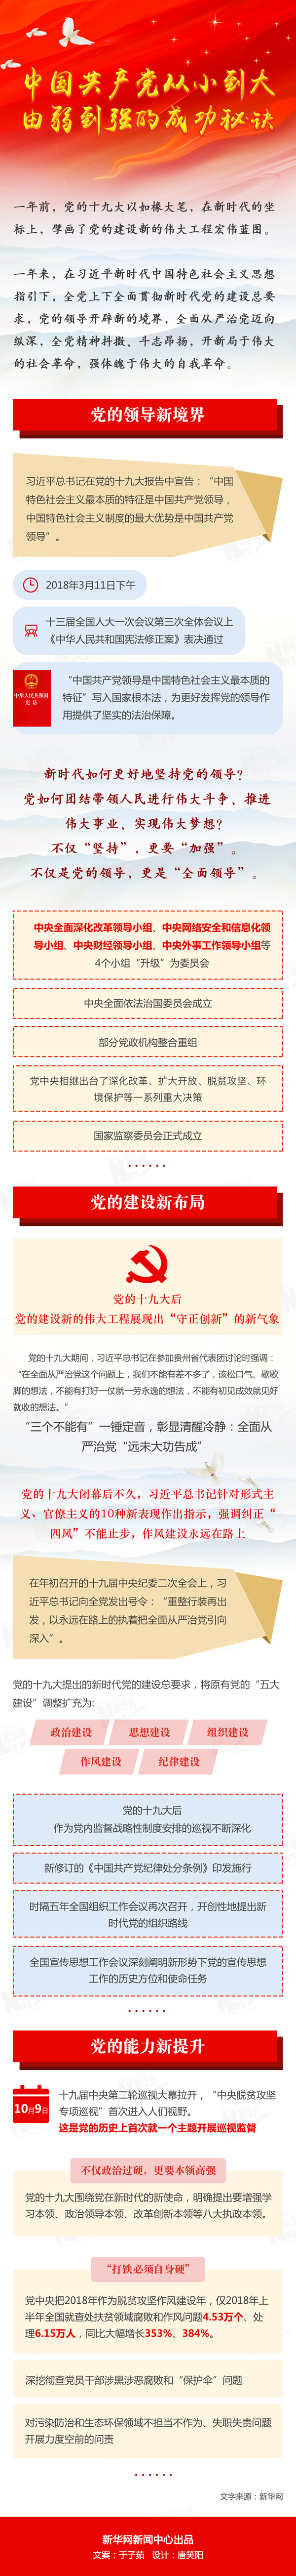 中国共产党从小到大、由弱到强的成功秘诀